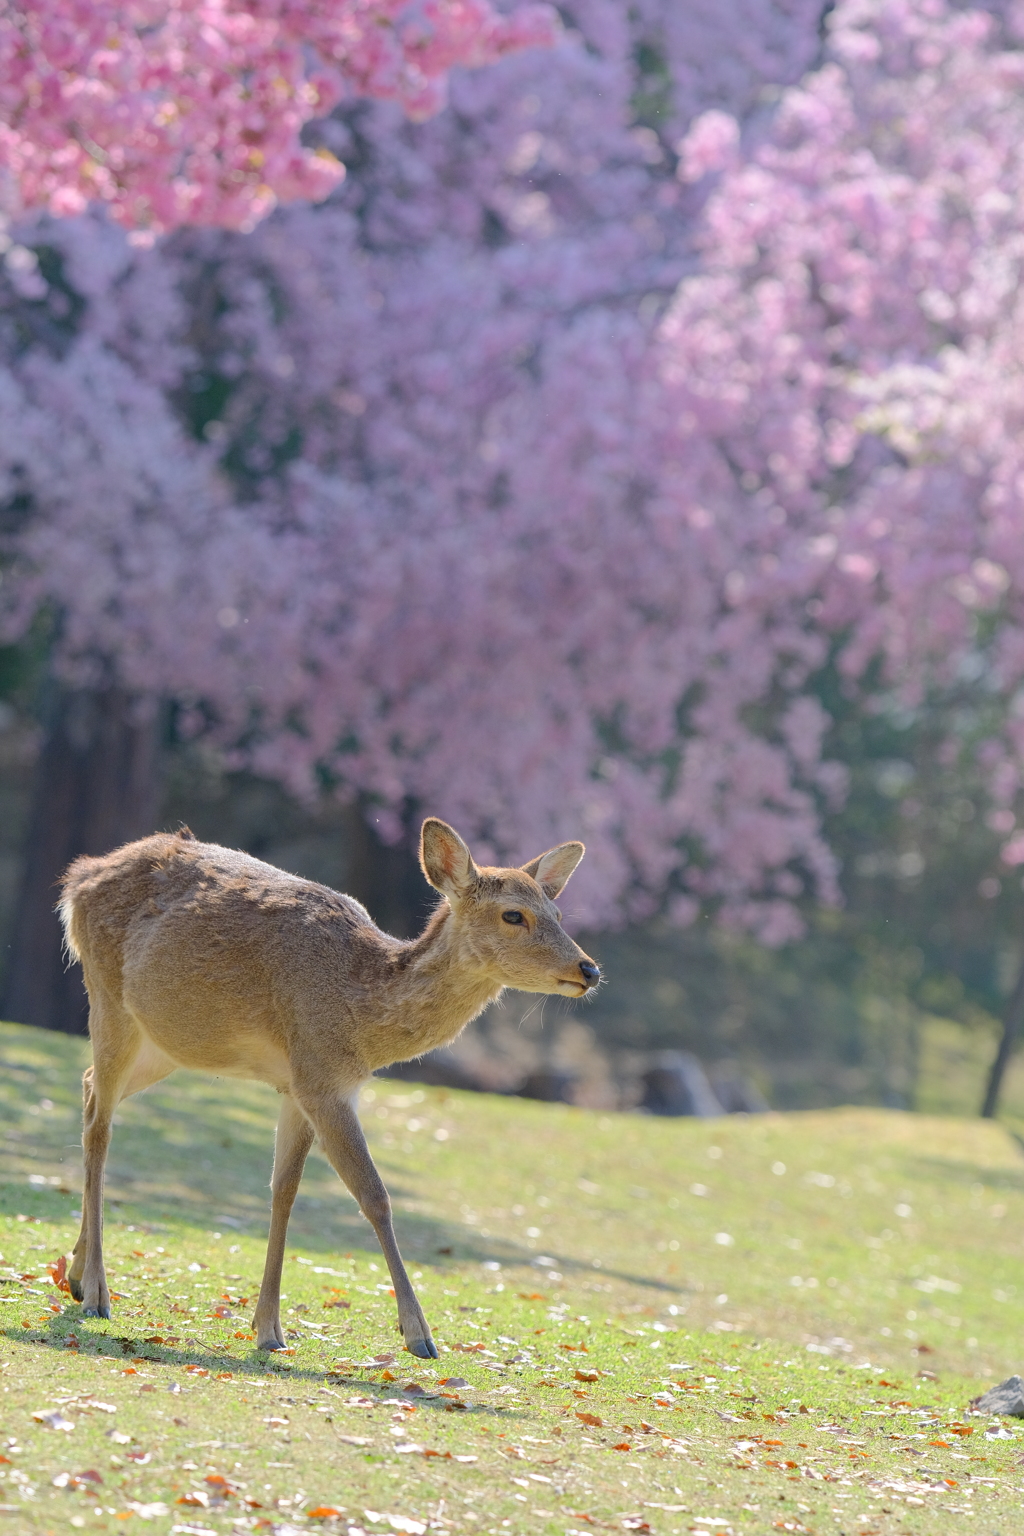 奈良鹿と桜